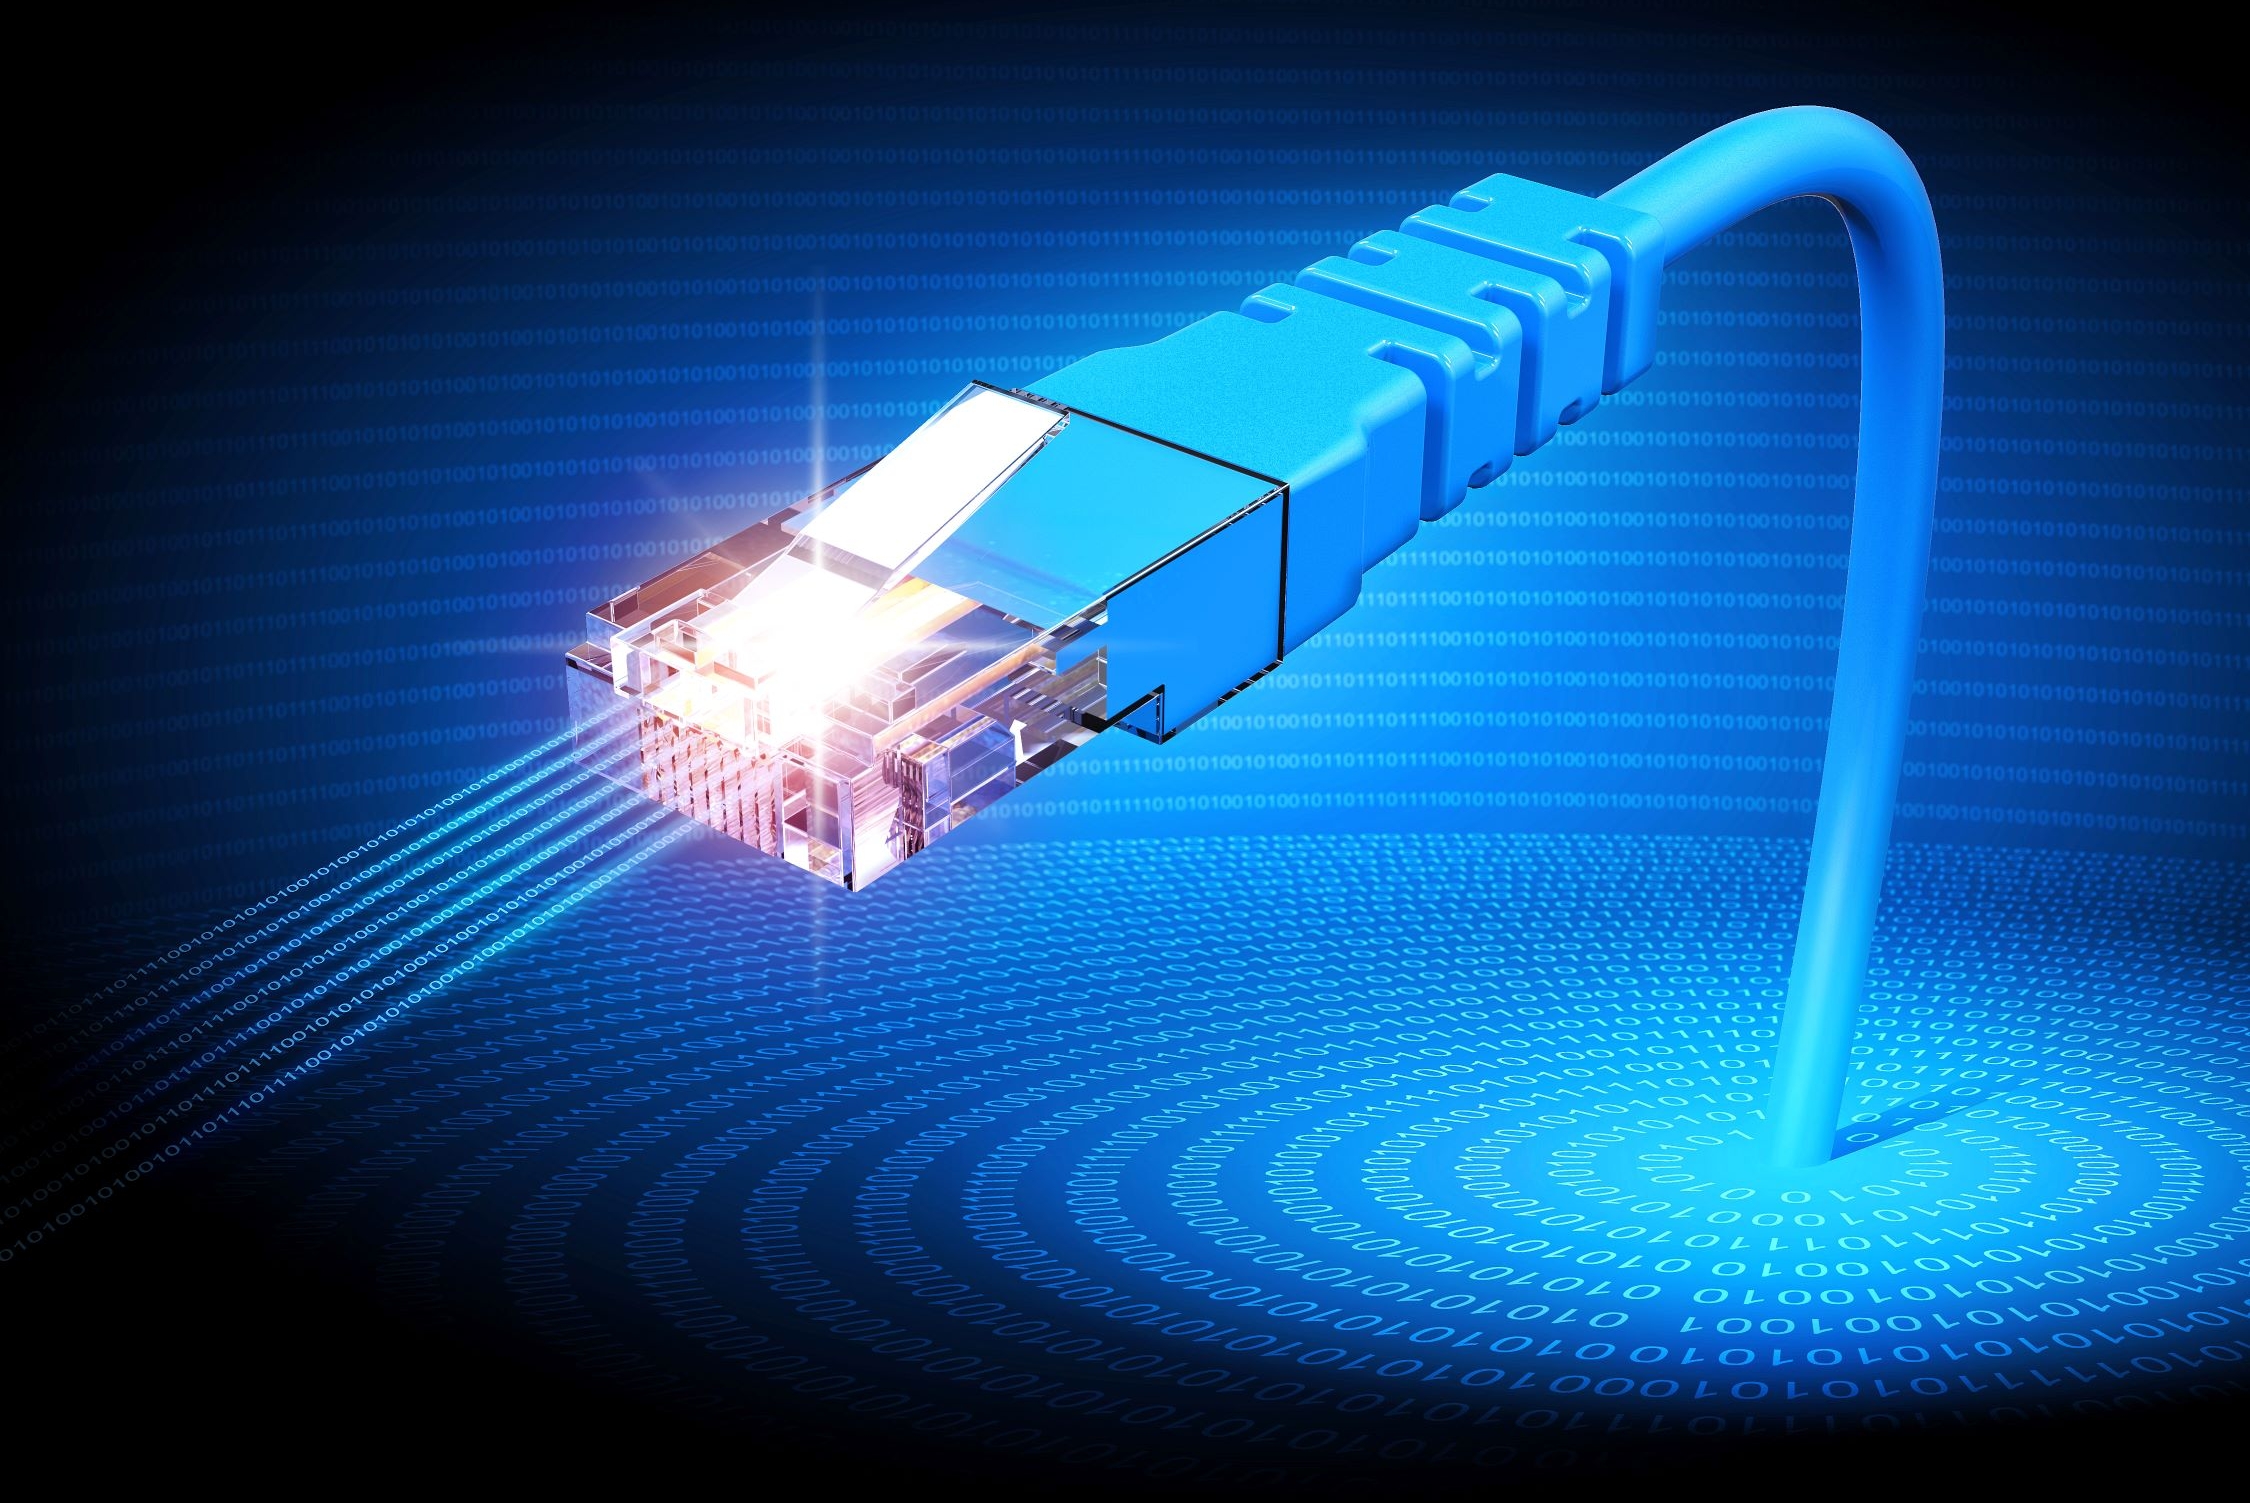 Ethernet CNC connectivity